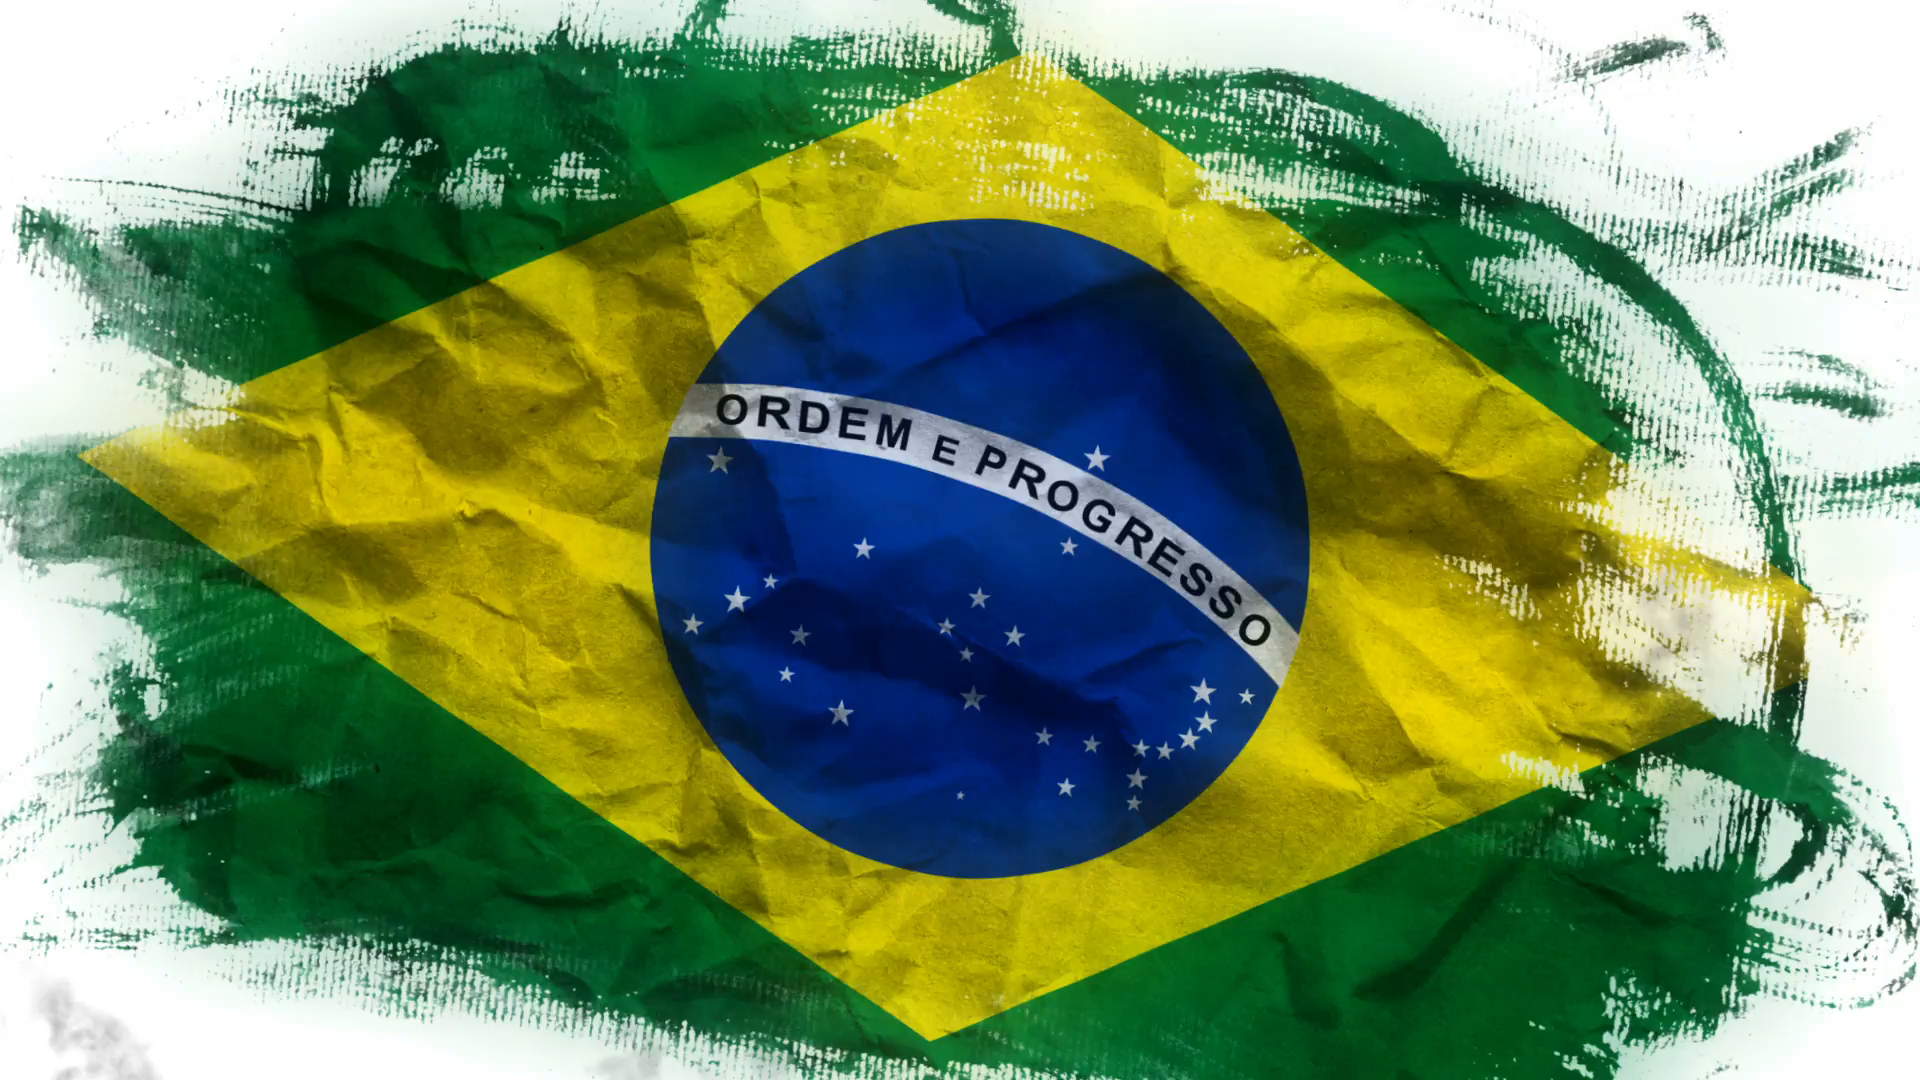 Brazil Flag PNG Image in Transparent - Brazil Flag Png